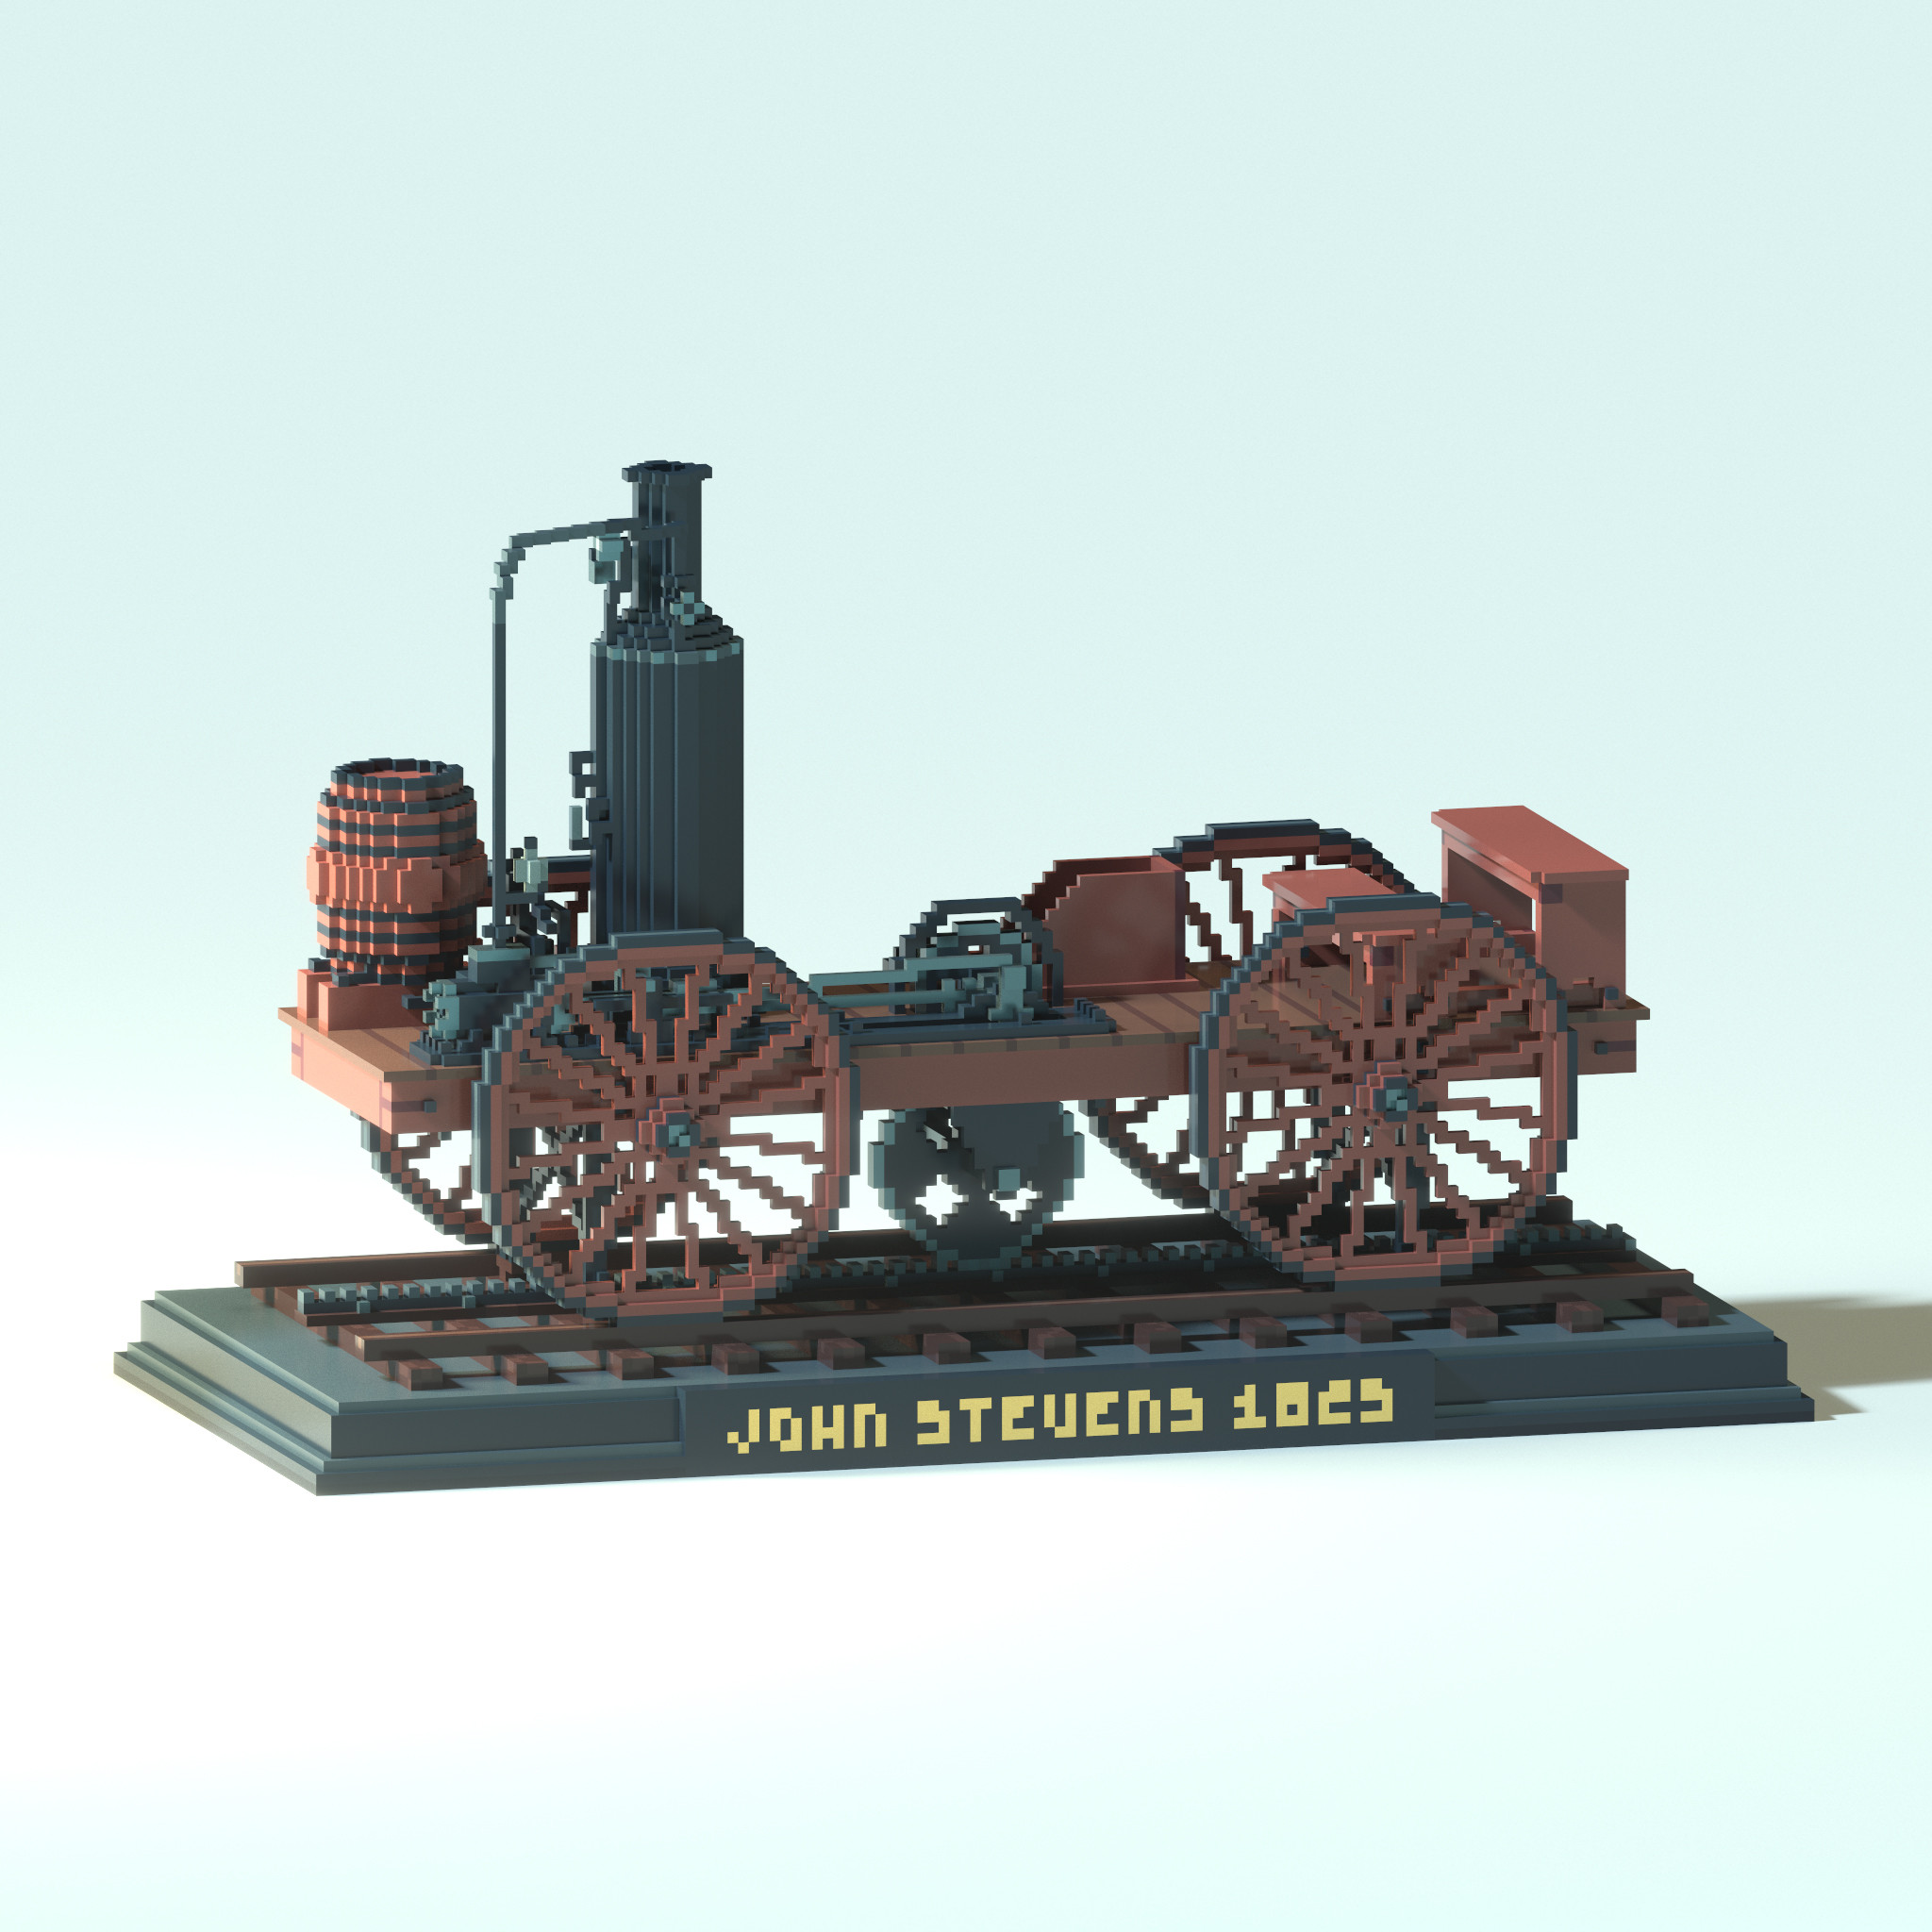 Rendering of the early steam locomotive John Stevens.